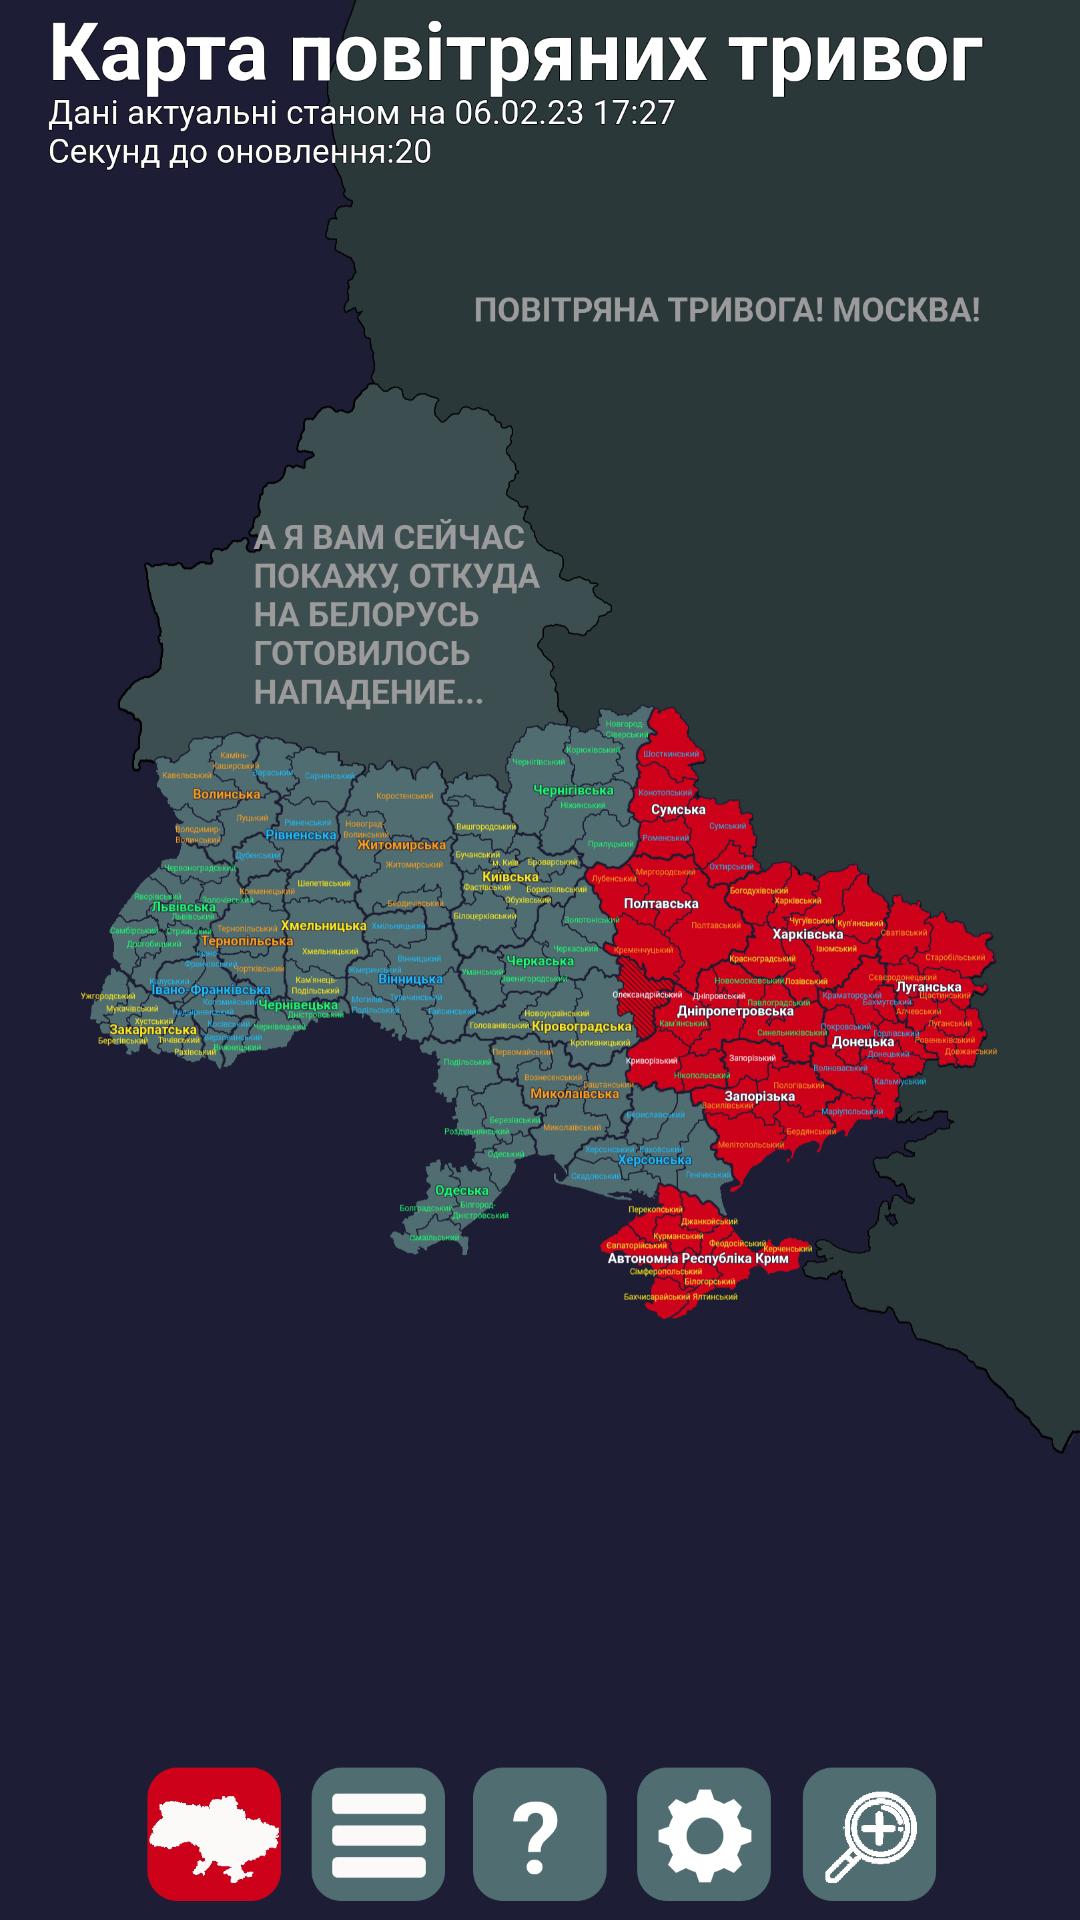 Карта тревог в Украине. Карта повітряних тривог в Україні. Карта повитряних тревог украины